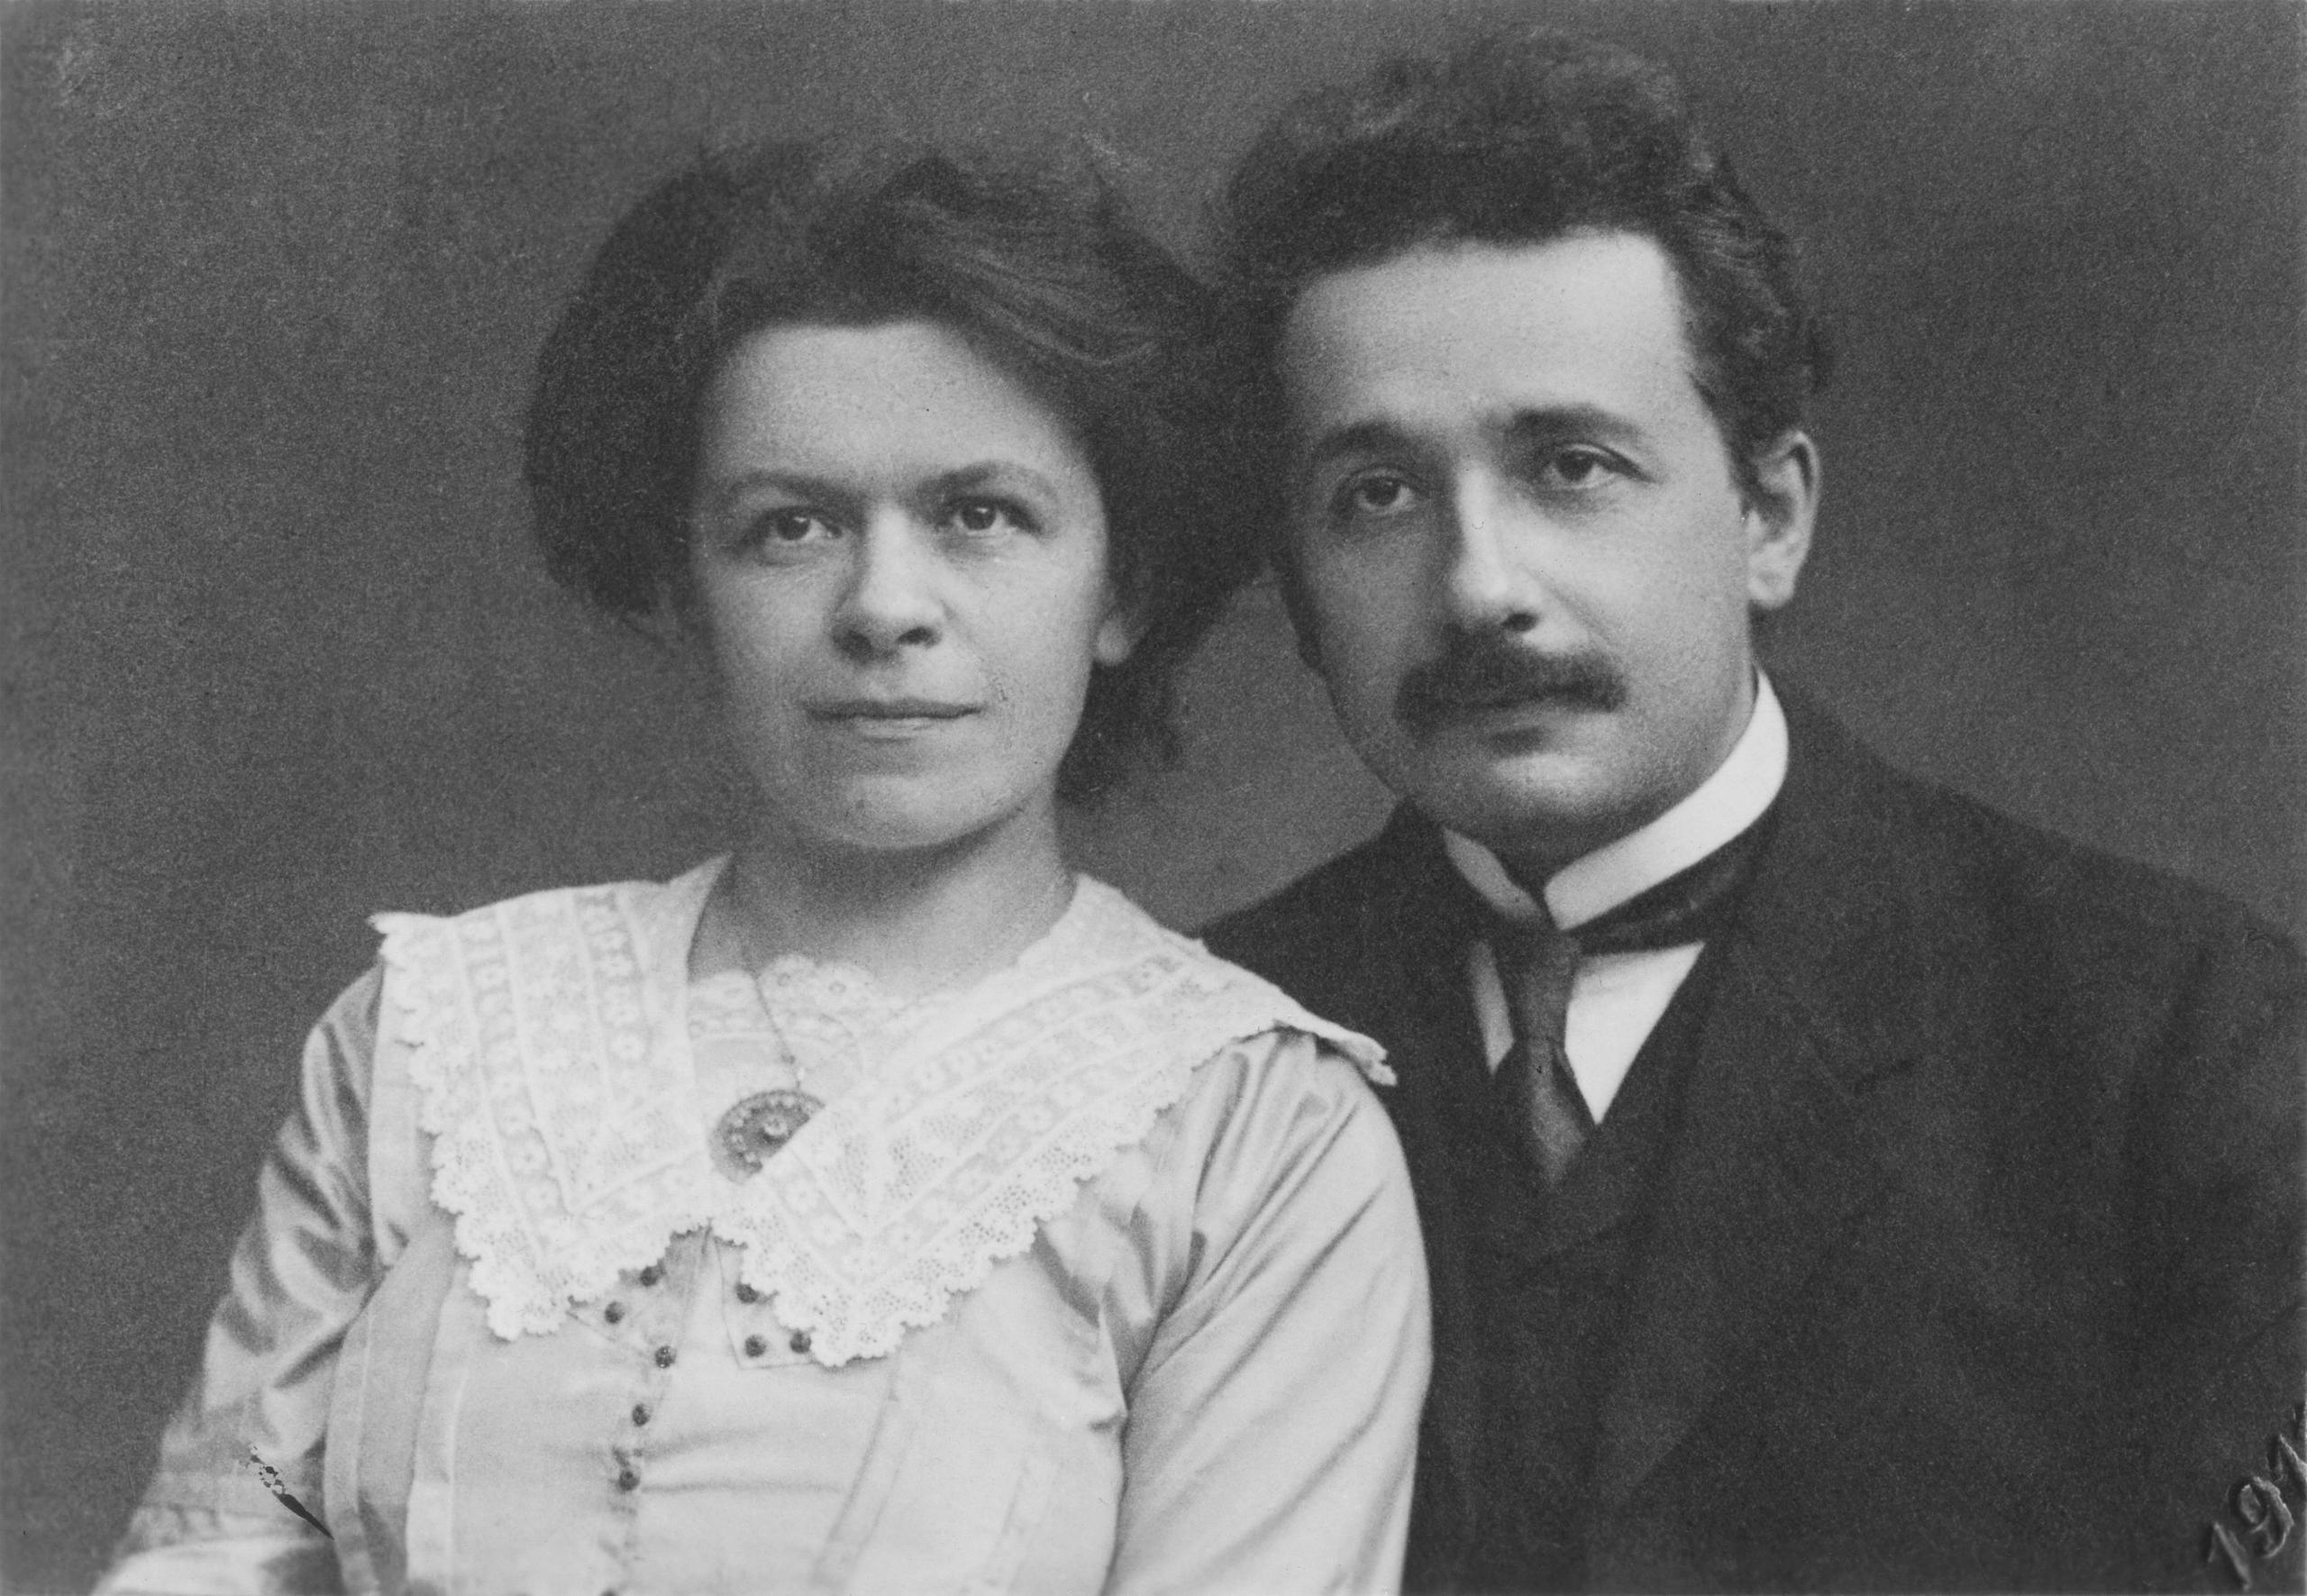 Mileva Maric with her husband Albert Einstein.